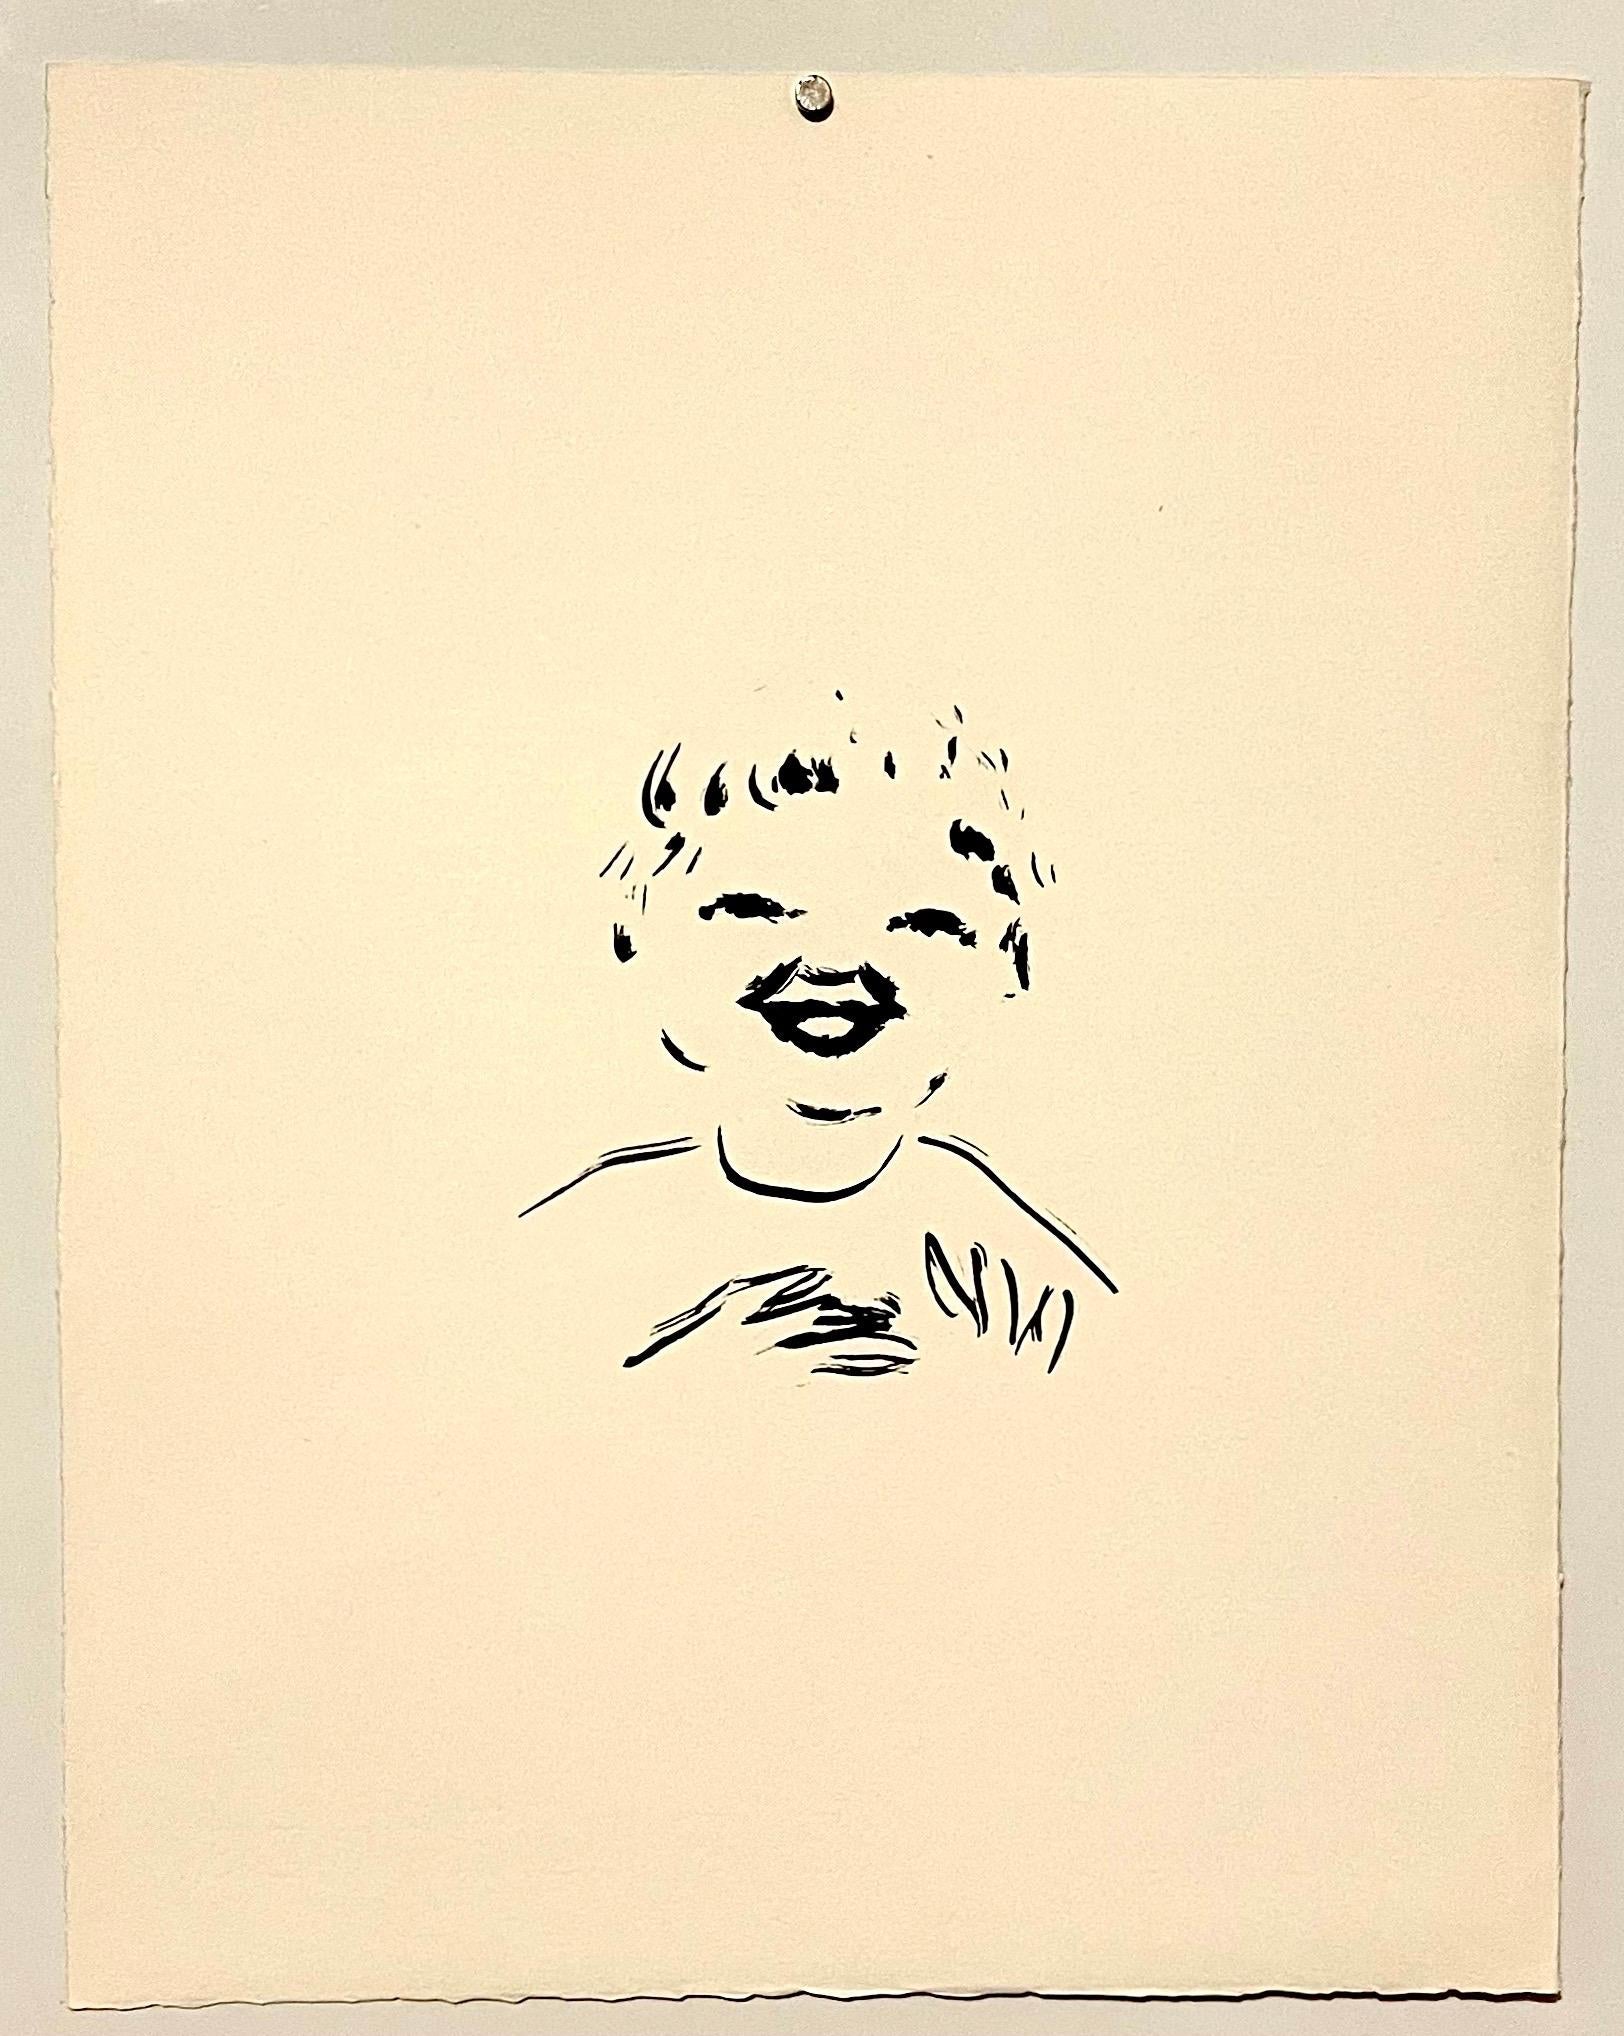 Pierre Bonnard ltd edition Lithograph Printed at Mourlot Paris 1958 Young Boy For Sale 1